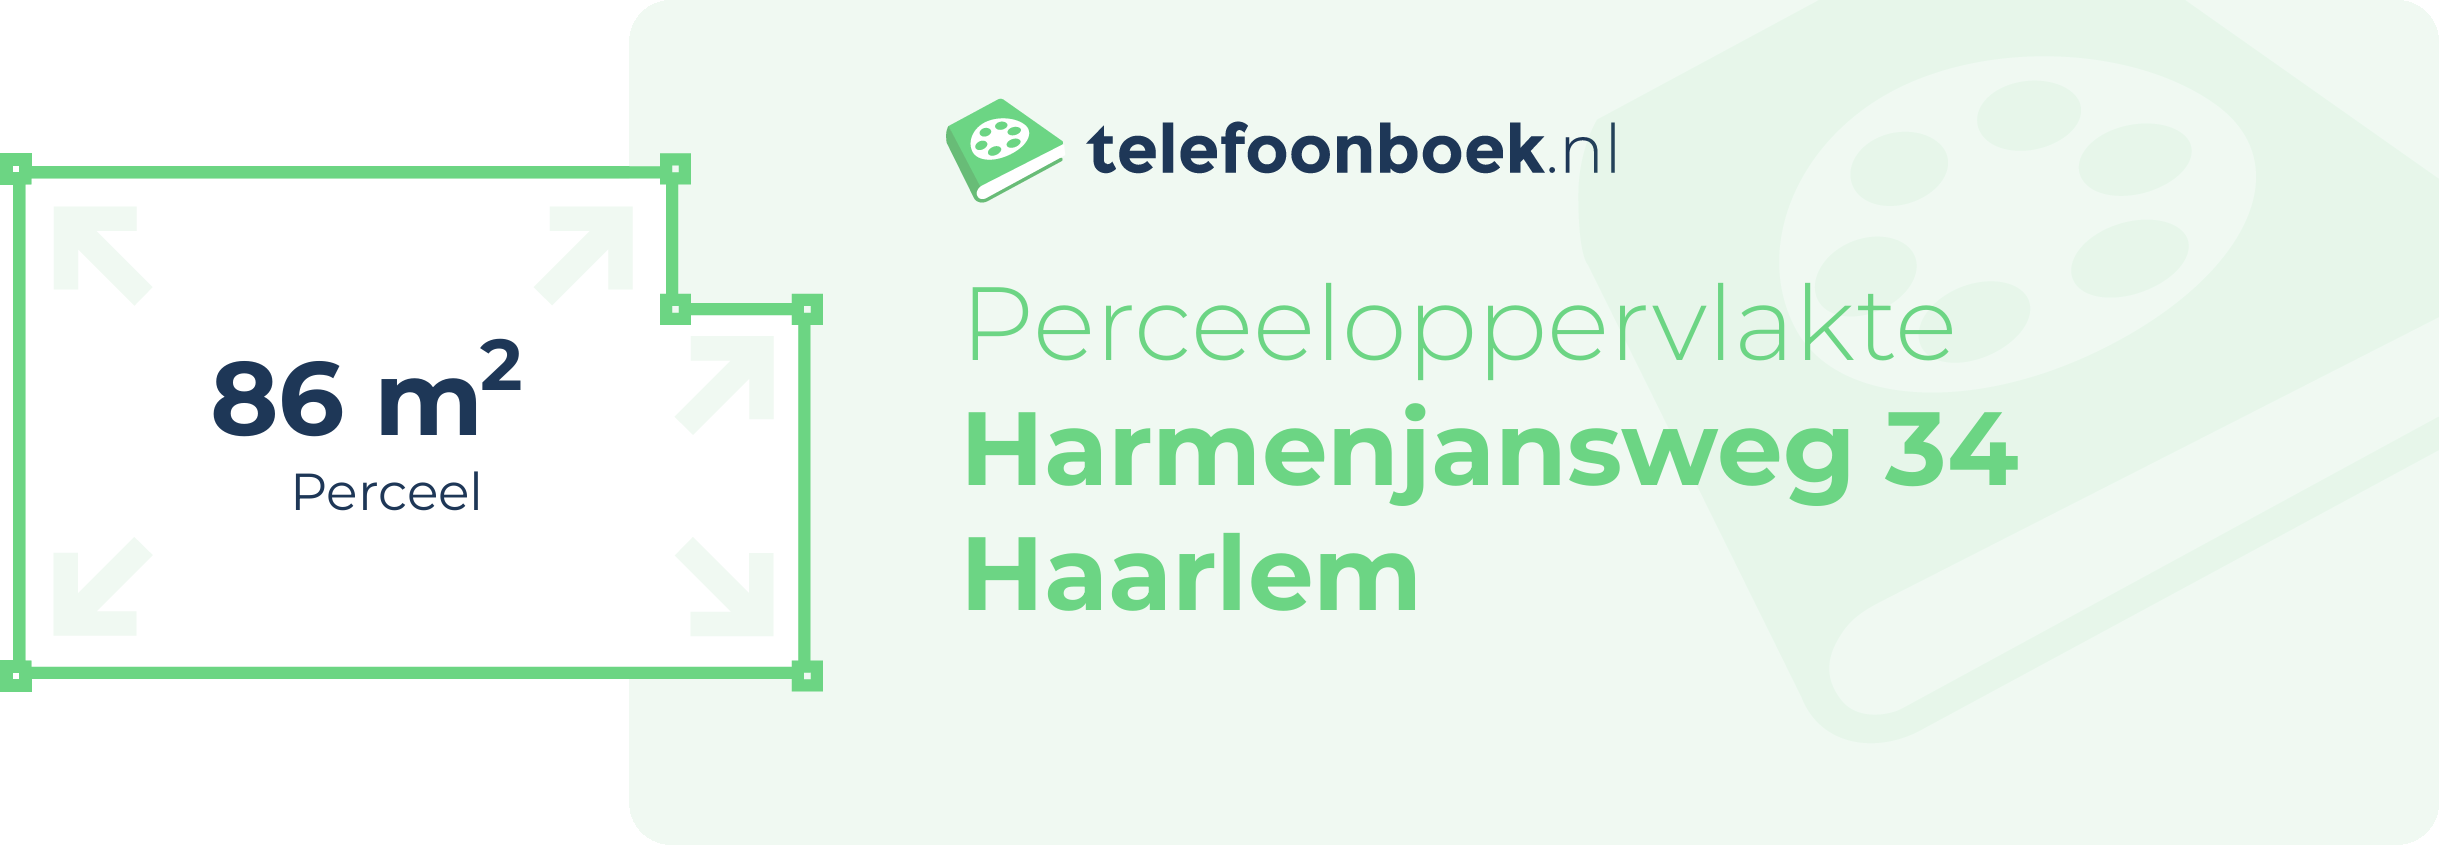 Perceeloppervlakte Harmenjansweg 34 Haarlem